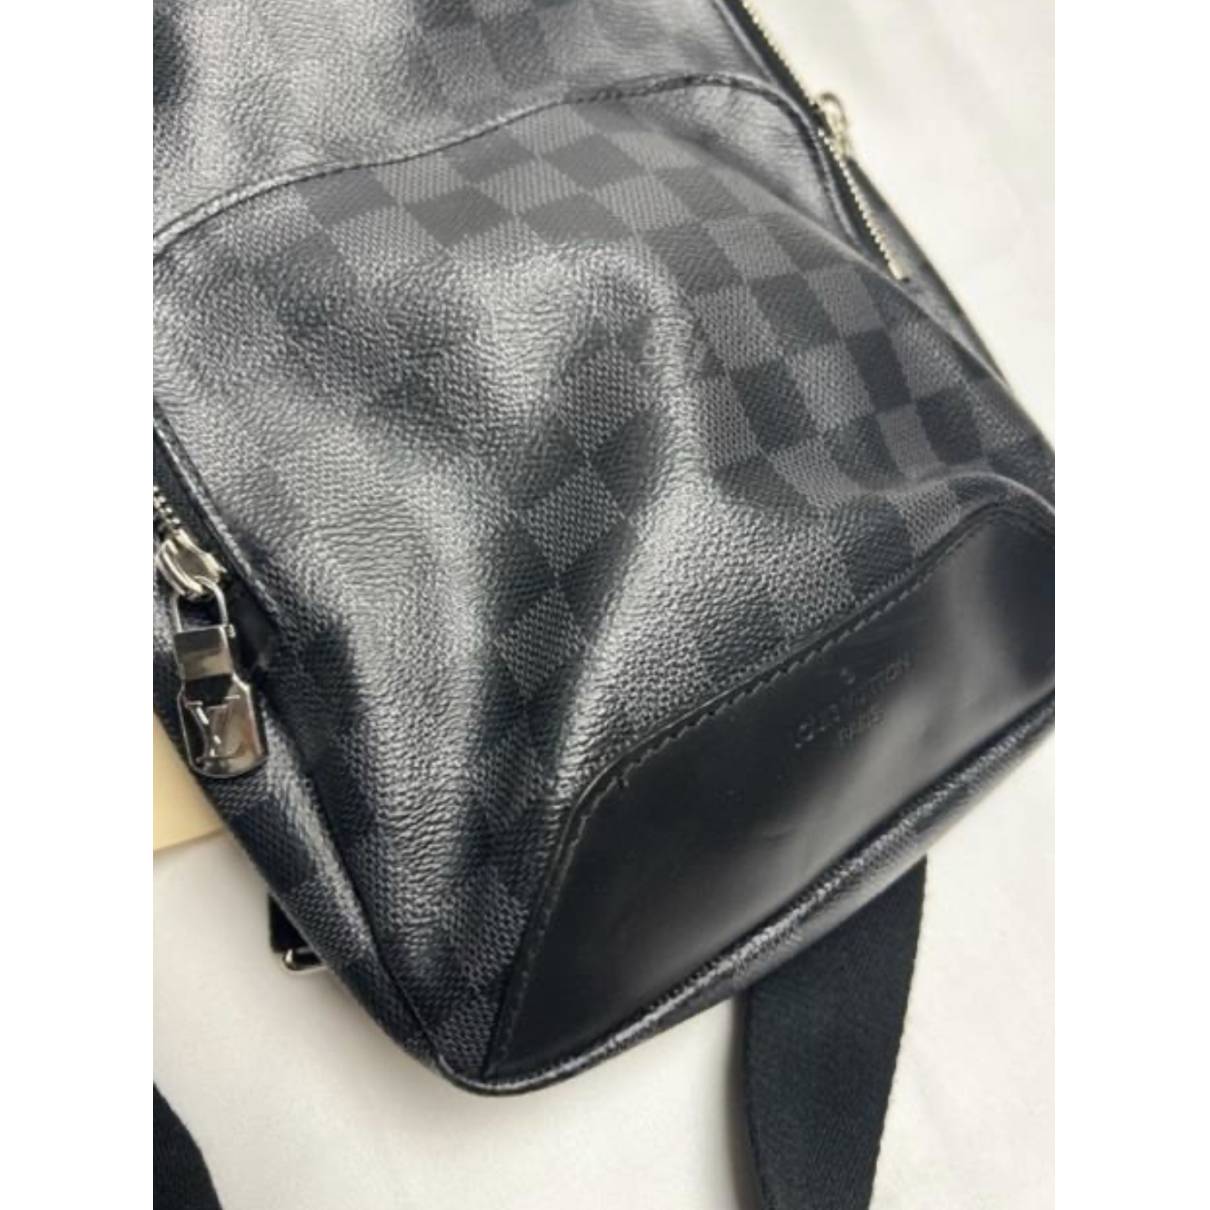 Louis+Vuitton+Avenue+Sling+Bag+Black+Leather for sale online